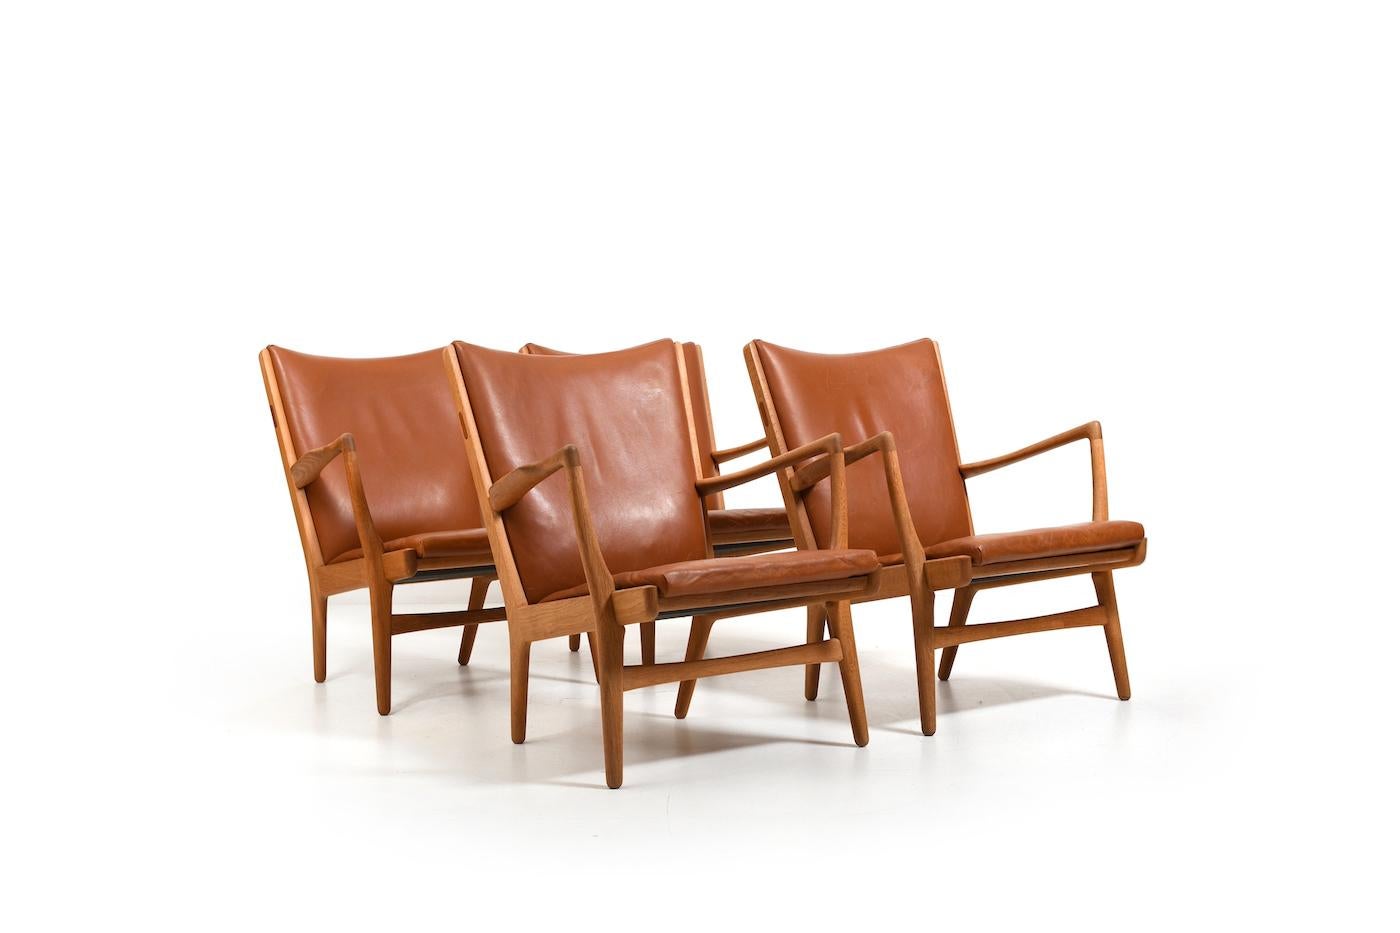 Ensemble de quatre fauteuils, modèle AP-16 par Hans J. Wegner pour AP Stolen Danemark 1951. Fabriqué en chêne et en cuir cognac. Détail teck. Coussins originaux. Produit dans les années 1950. Provinance : Privat collector, Copenhague, Danemark. Tous